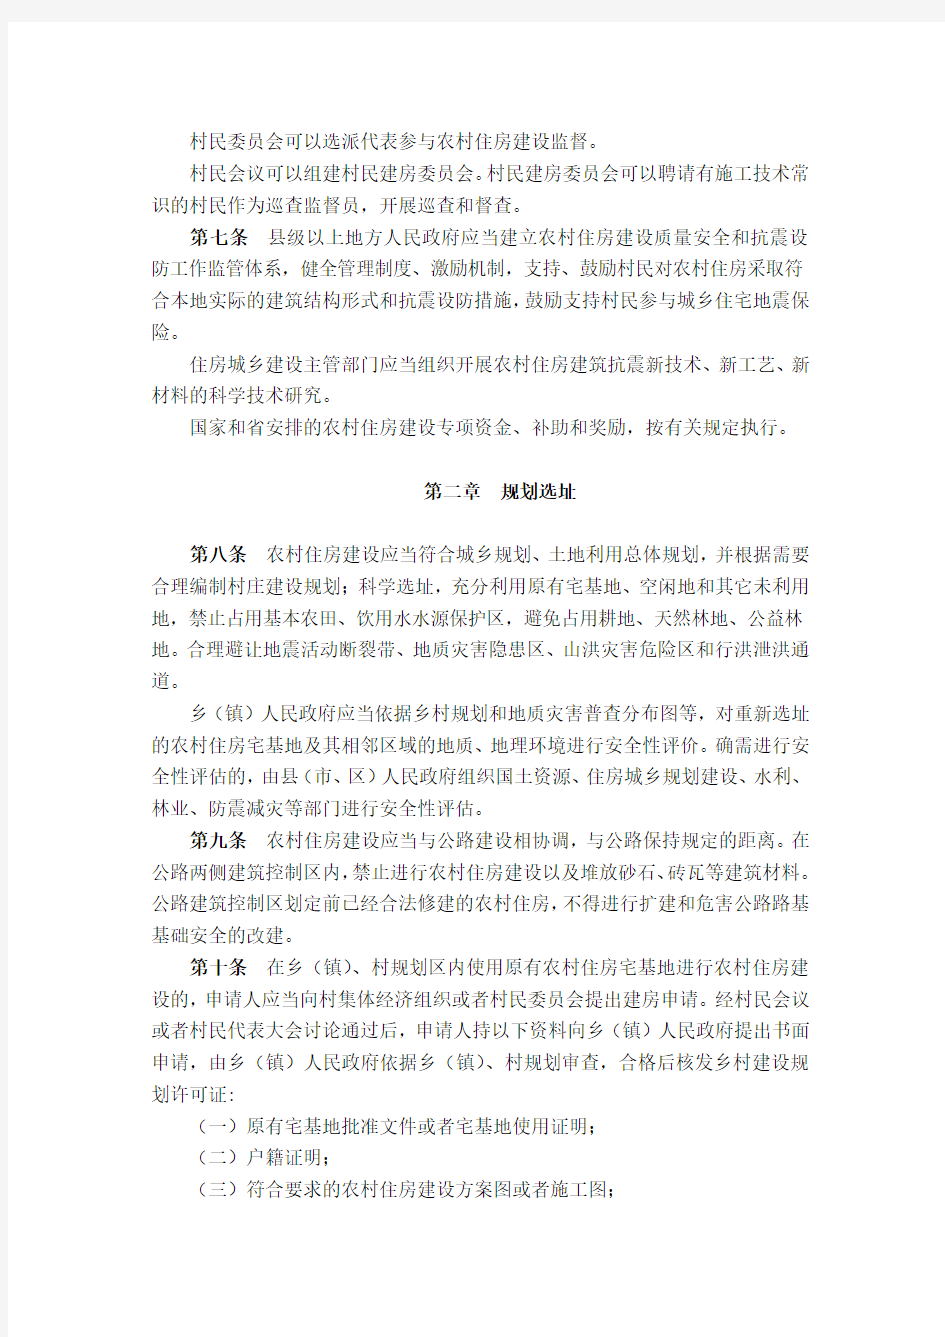 四川省农村住房建设管理办法 (1)